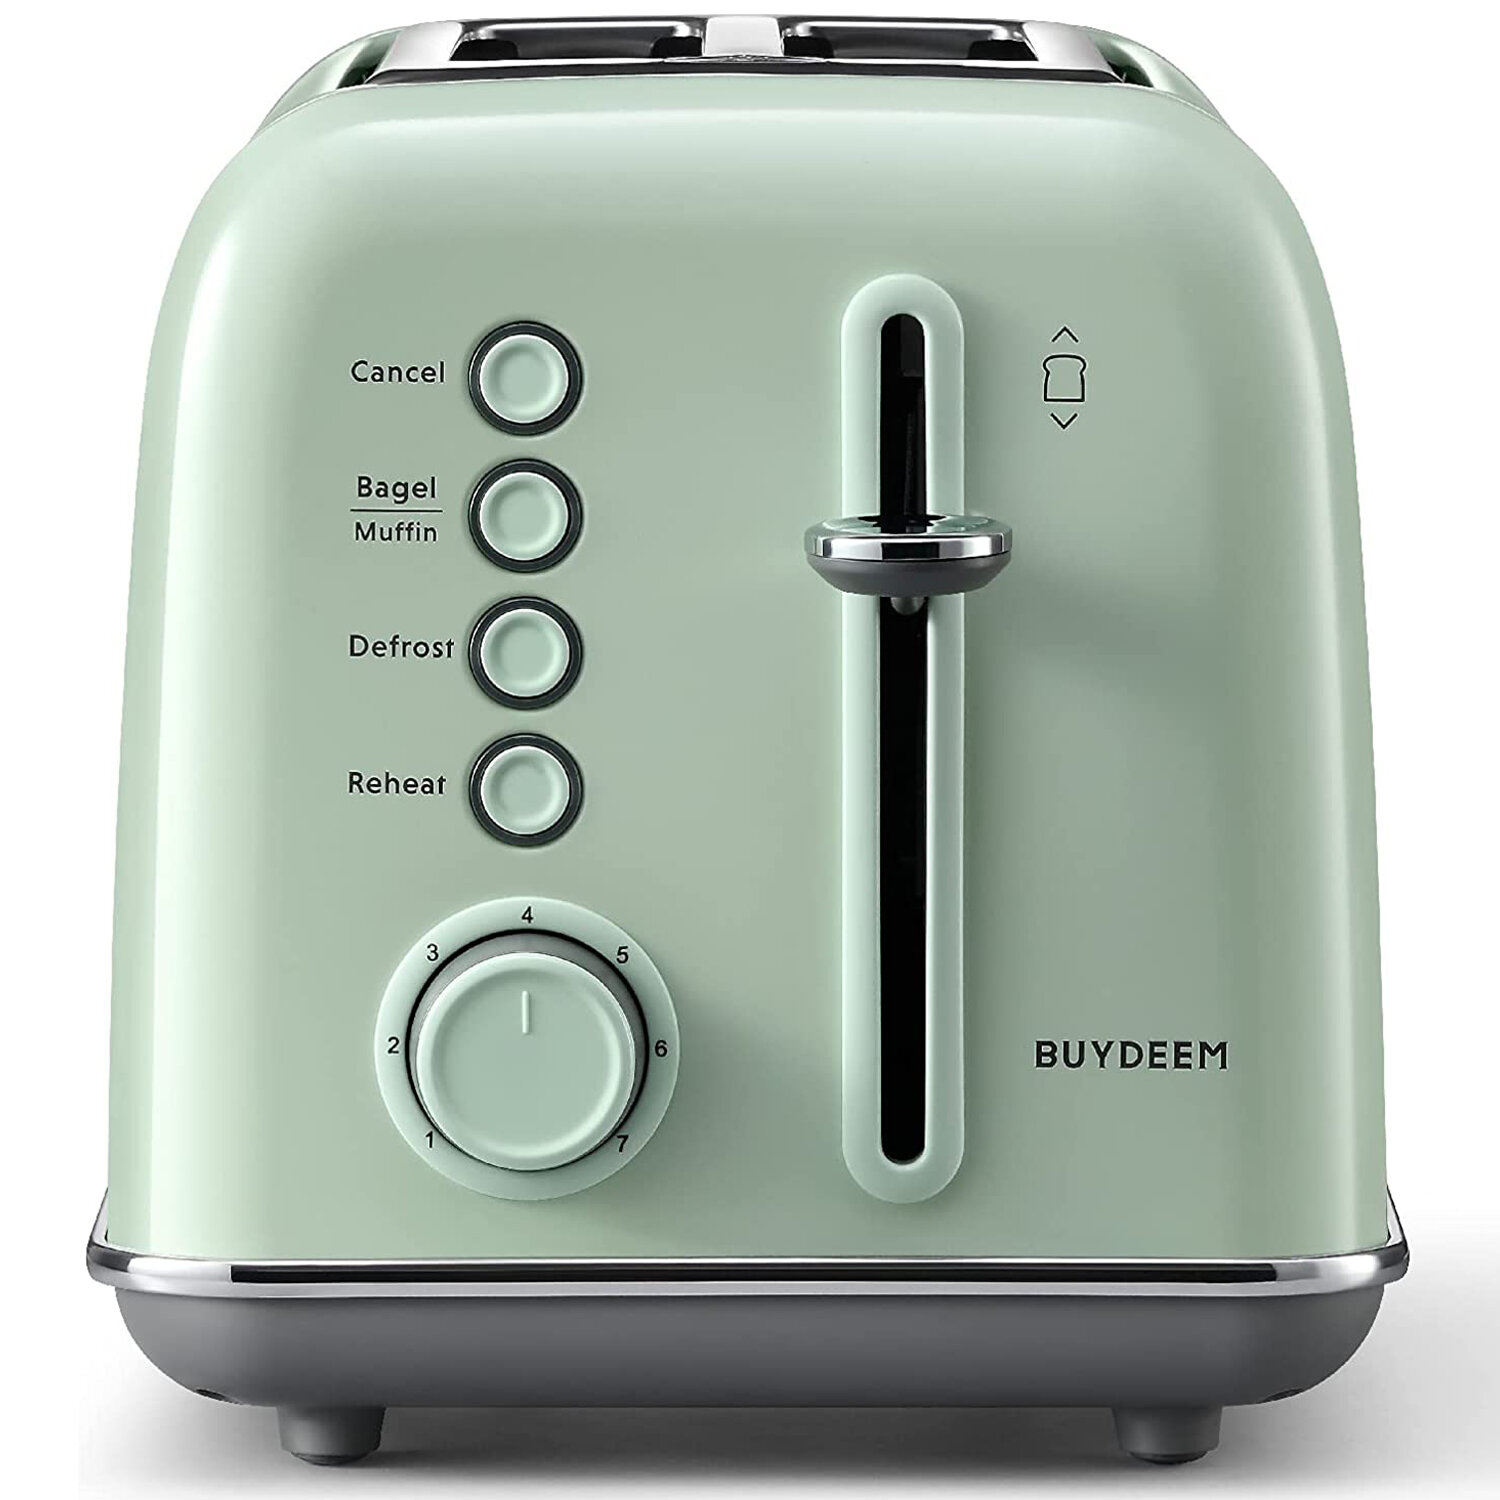 https://assets.wfcdn.com/im/81289757/compr-r85/1704/170435191/buydeem-2-slice-toaster.jpg